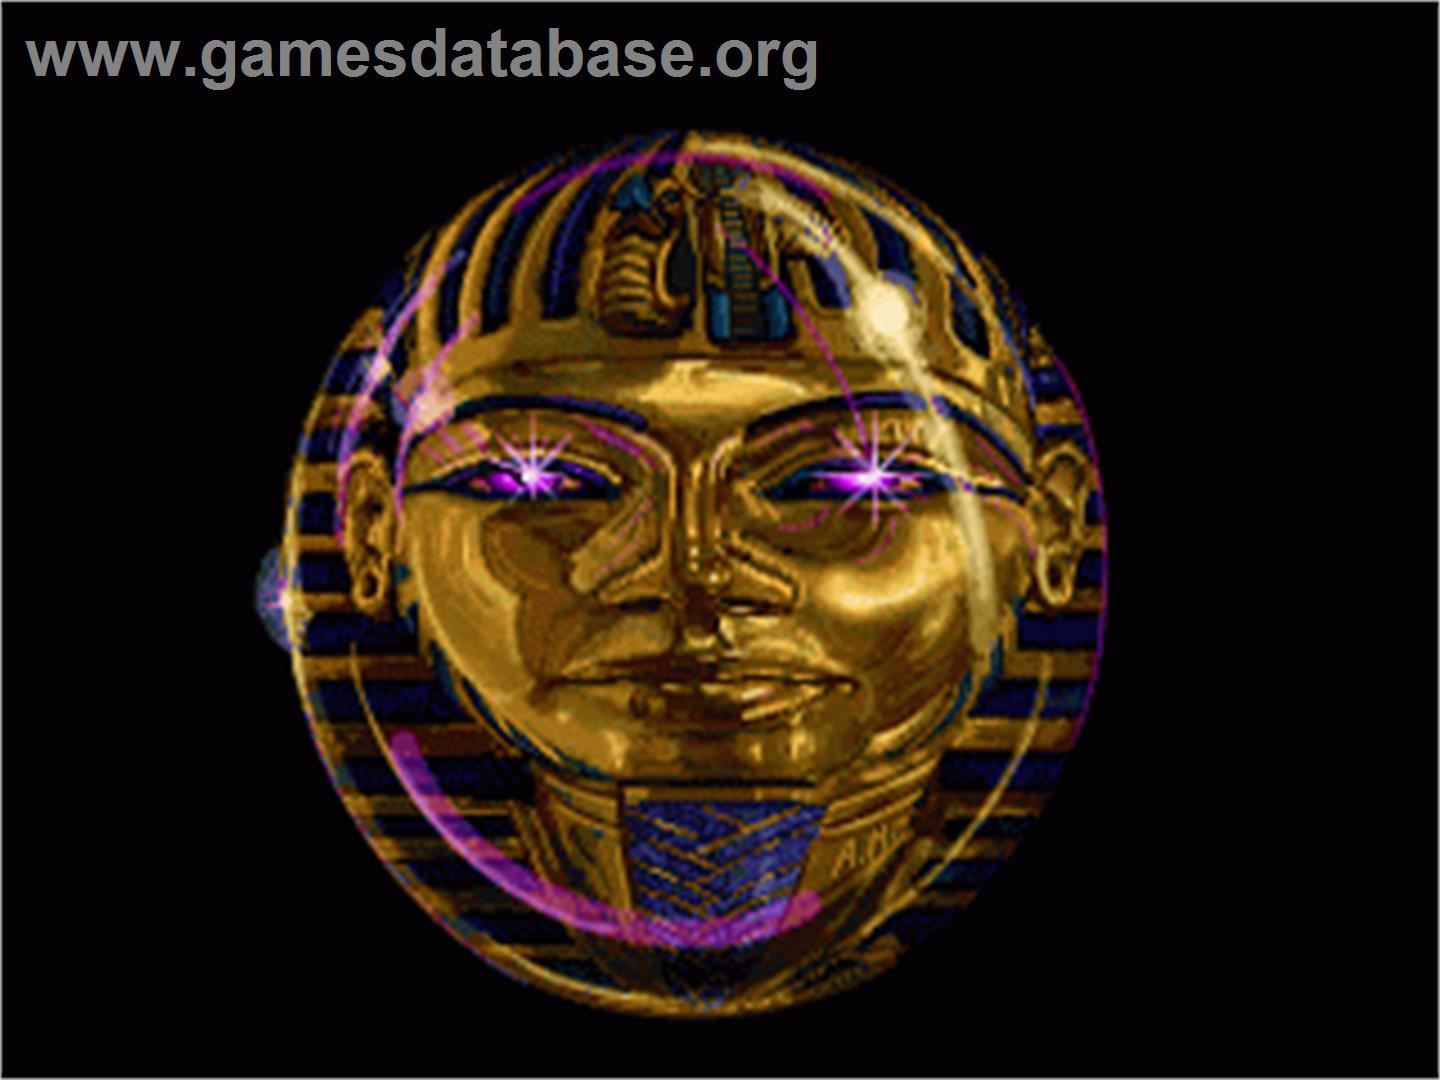 Mars Sample Program: Egypt - Sega 32X - Artwork - In Game